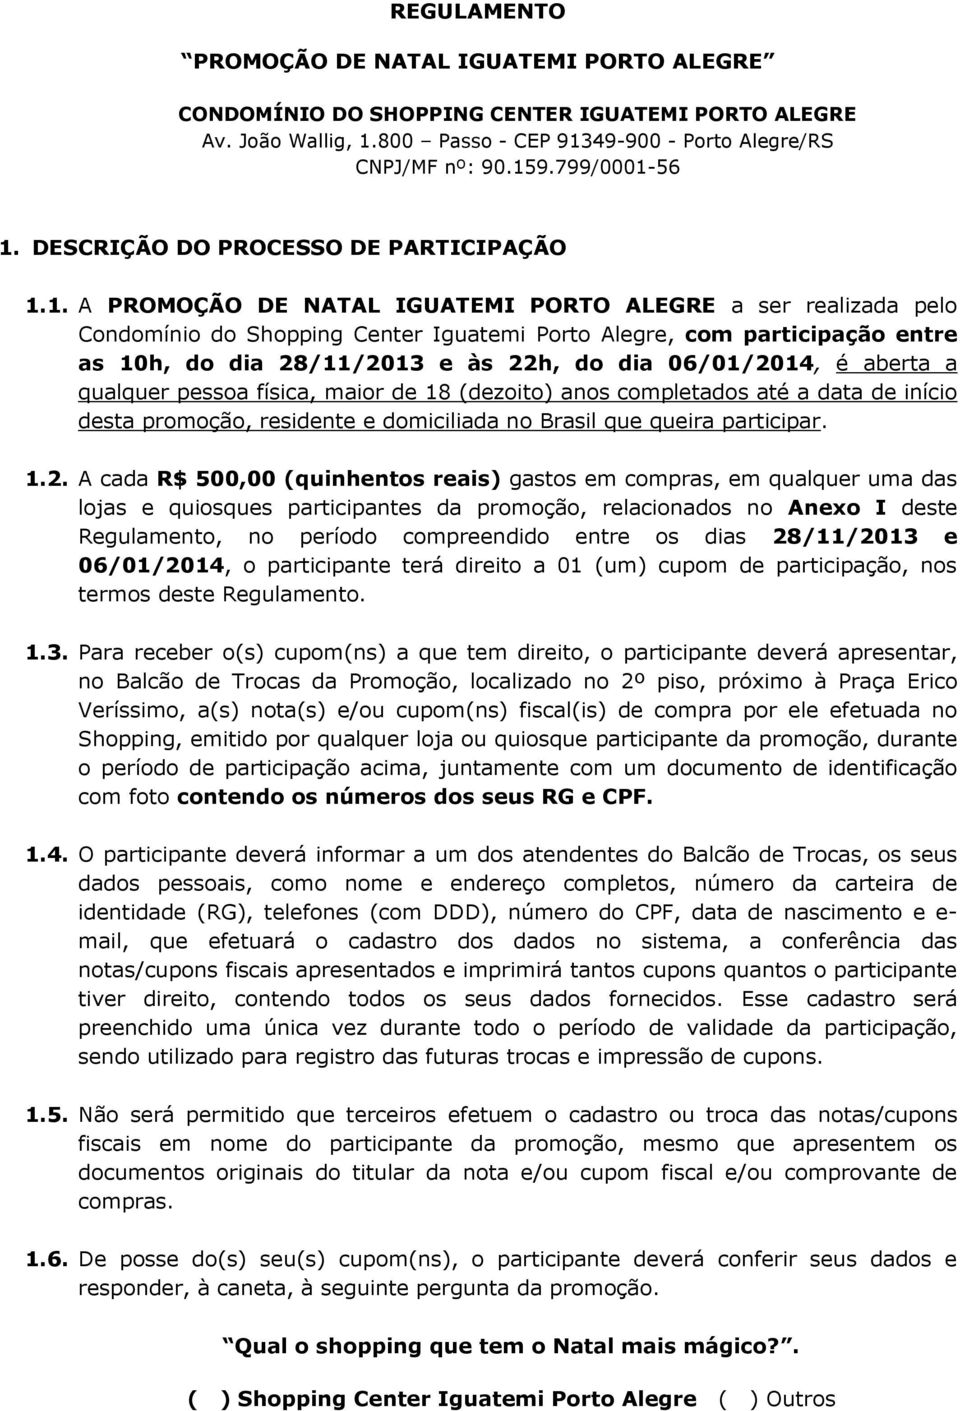 1. A PROMOÇÃO DE NATAL IGUATEMI PORTO ALEGRE a ser realizada pelo Condomínio do Shopping Center Iguatemi Porto Alegre, com participação entre as 10h, do dia 28/11/2013 e às 22h, do dia 06/01/2014, é